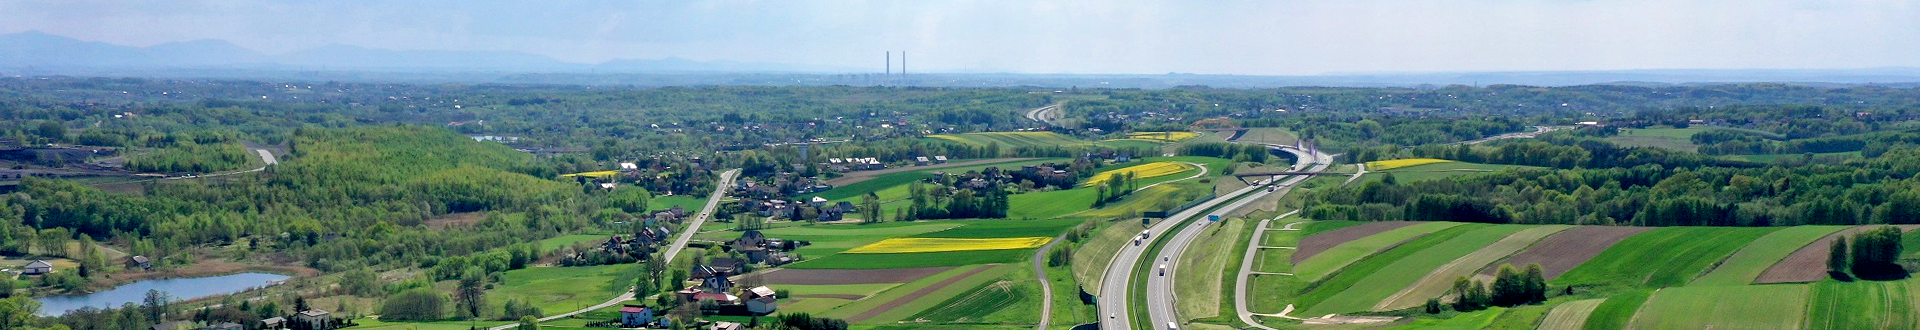 Widok z lotu ptaka na Gminę Mszana, z lewej droga wojew&oacute;dzka ulica Wolności, z prawej autostrada A1, w środku zielone pola, drzewa i zabudowania mieszkalne